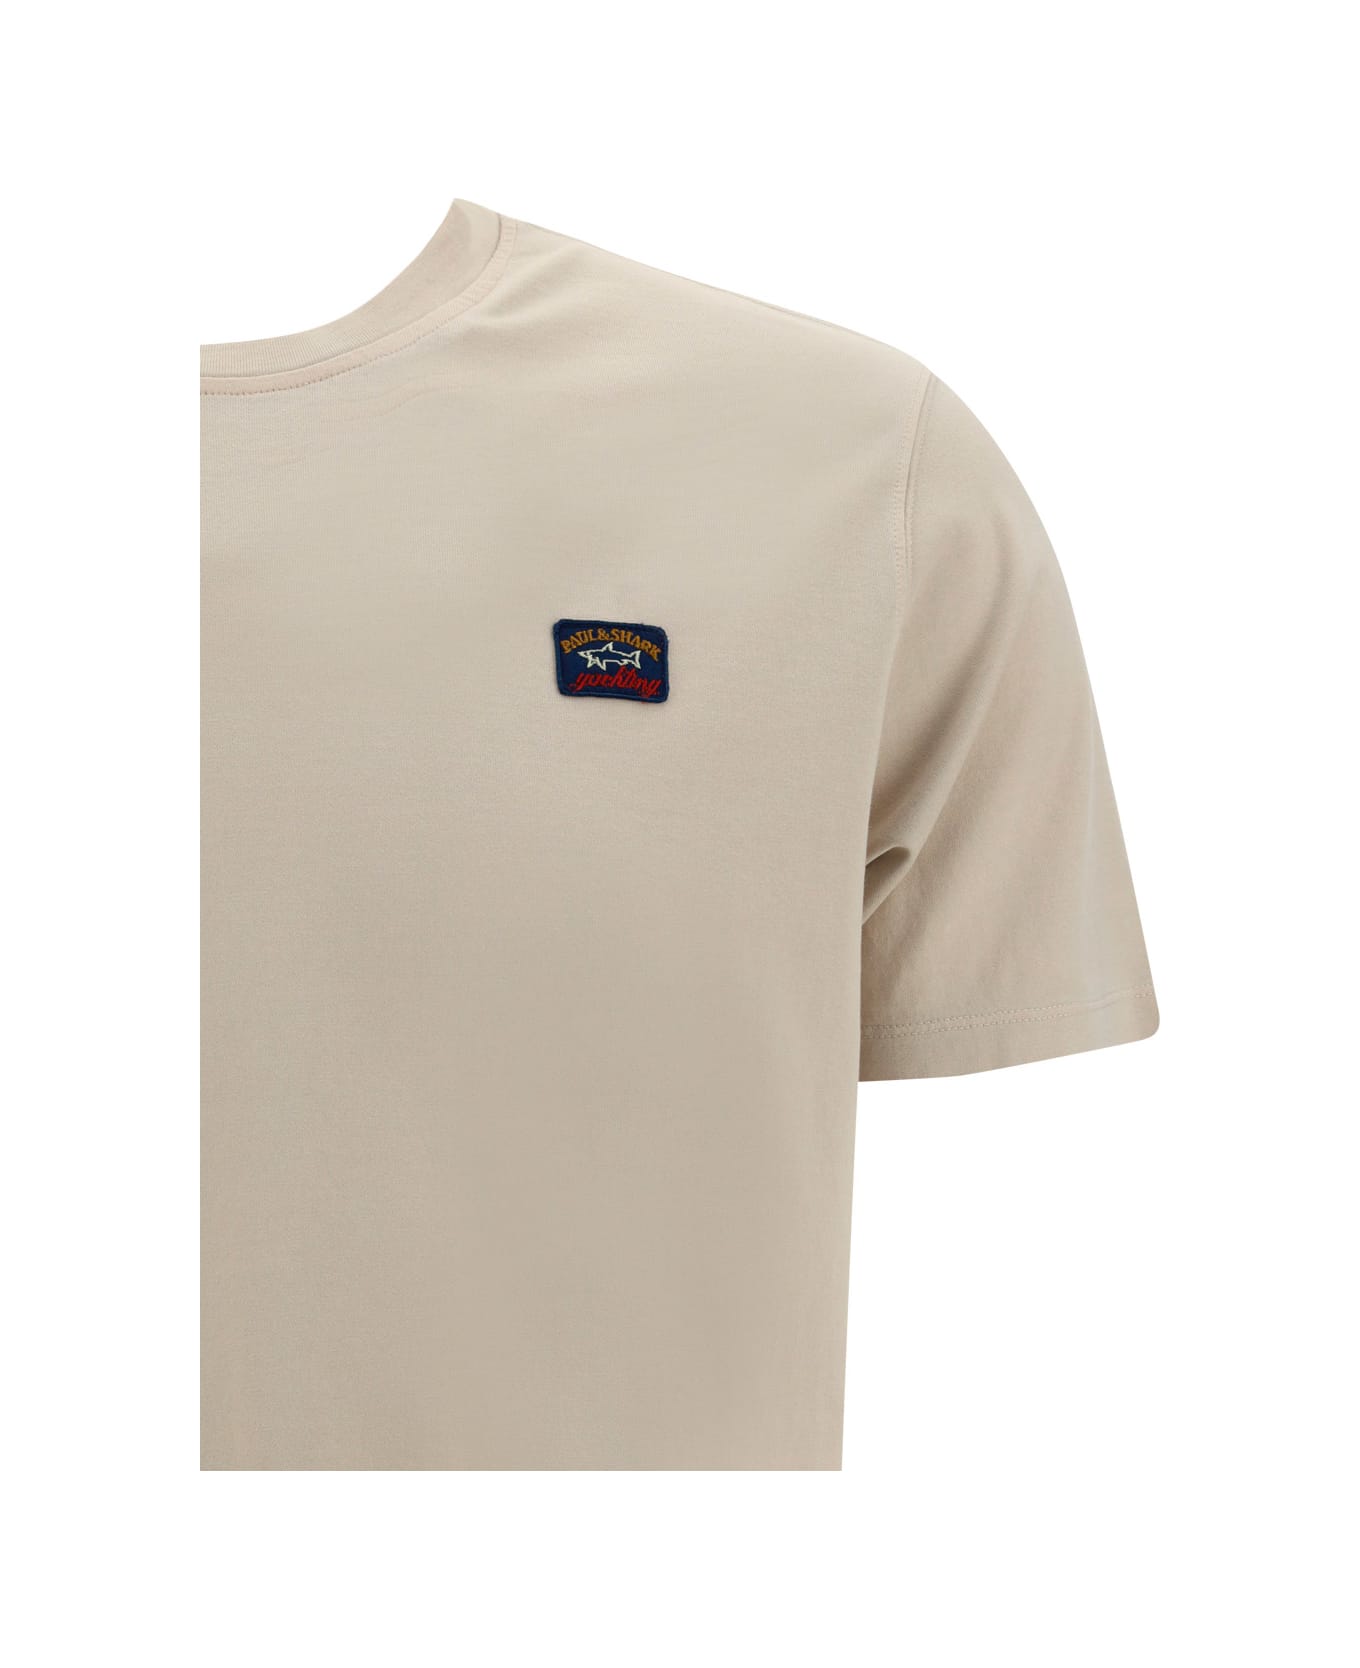 Paul&Shark T-shirt - Beige